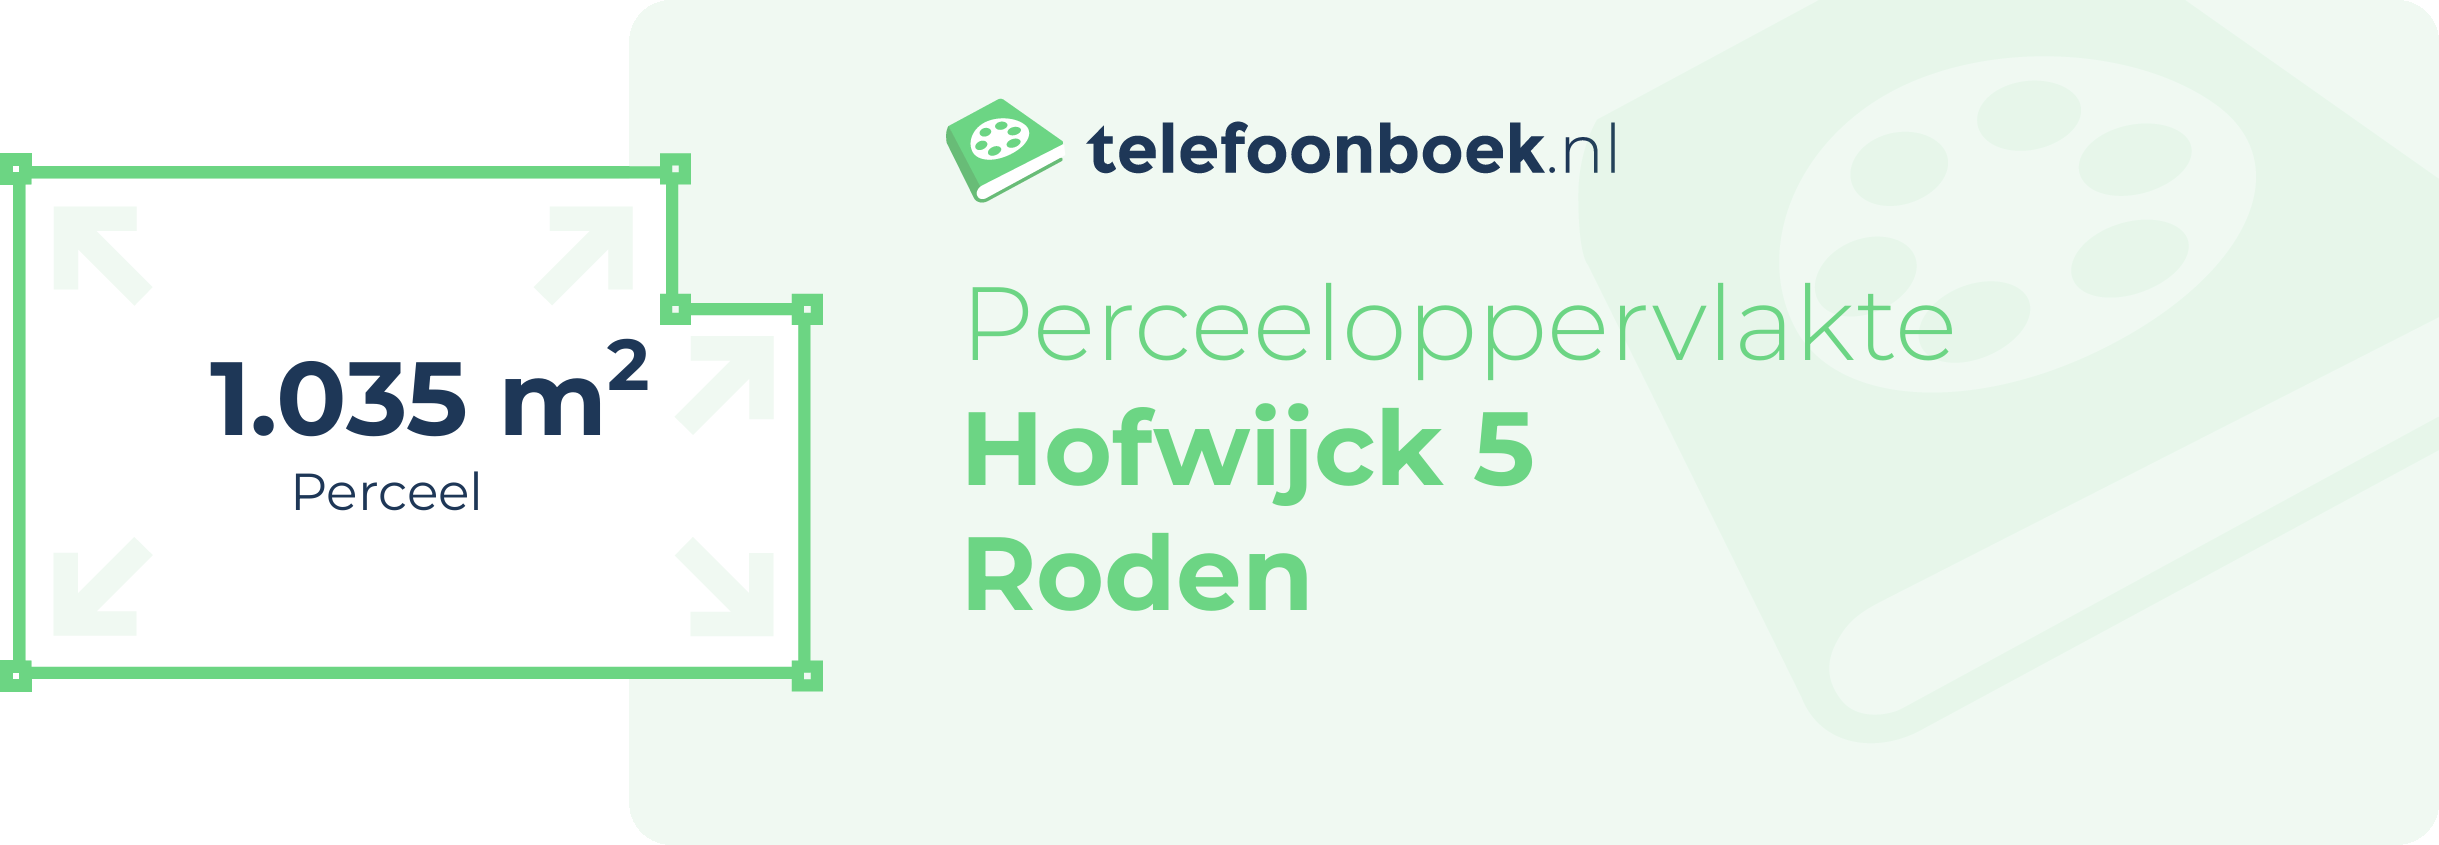 Perceeloppervlakte Hofwijck 5 Roden